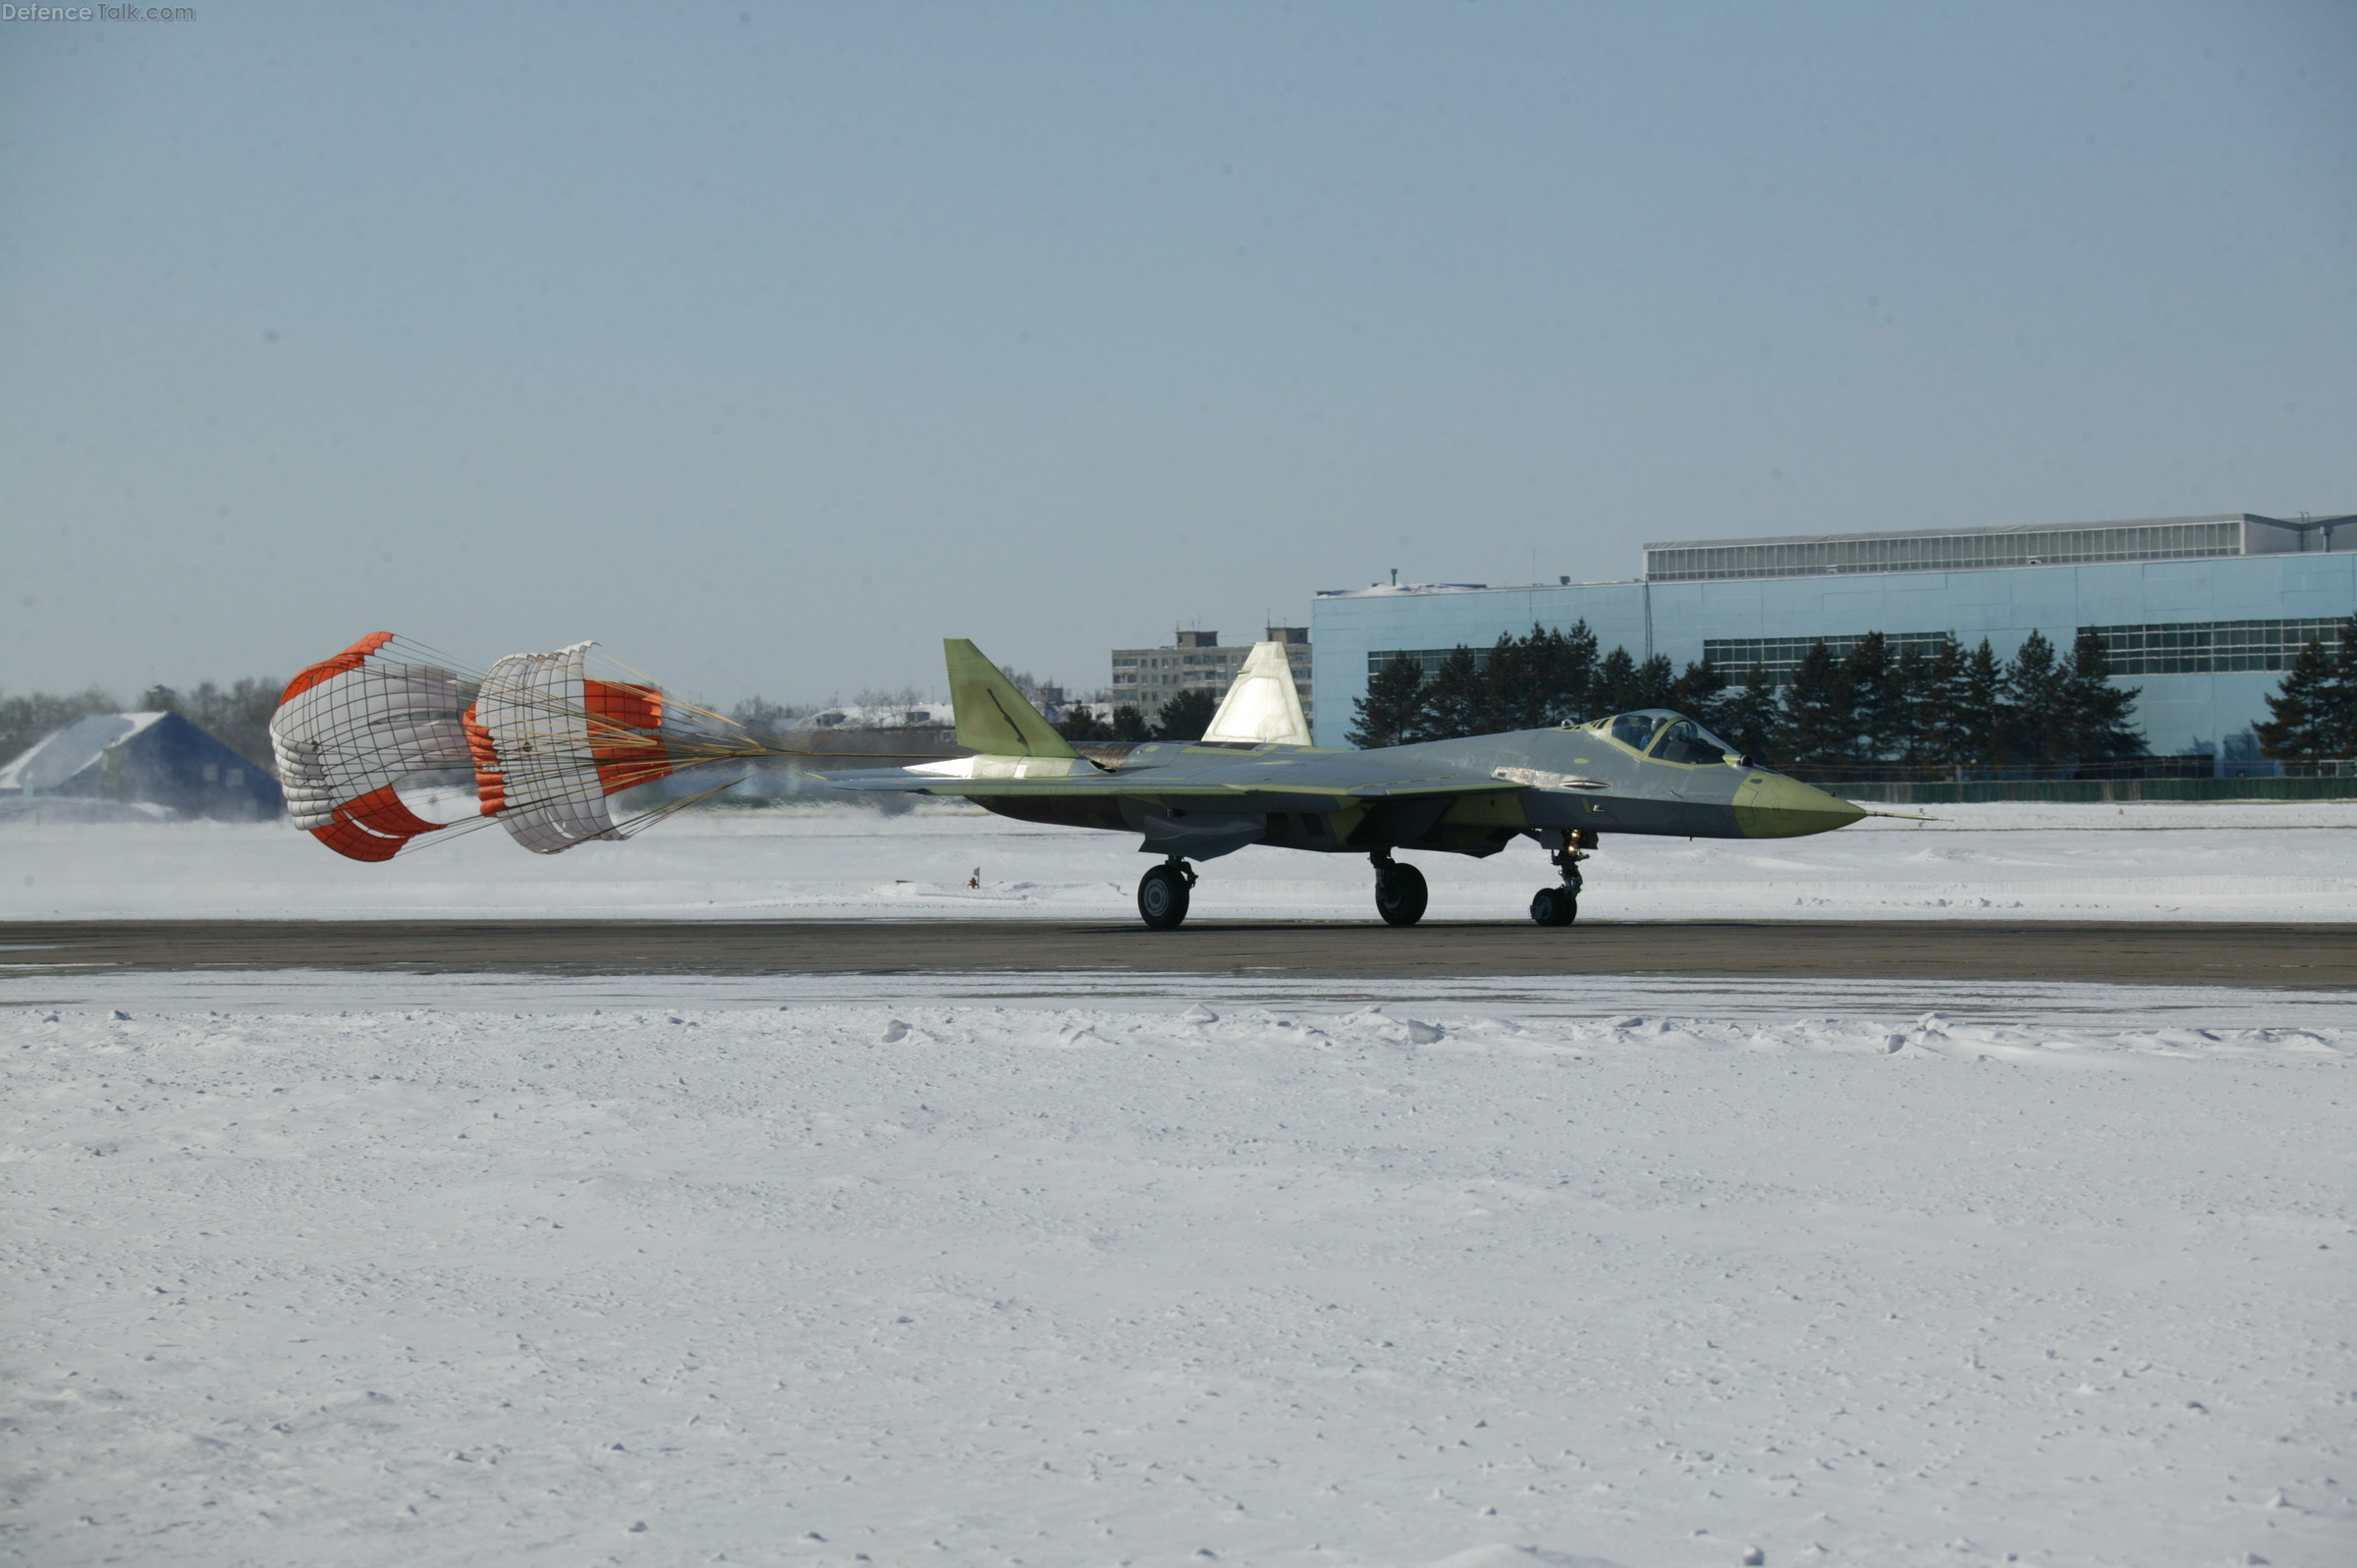 2nd T-50 PAK-FA Flight Test